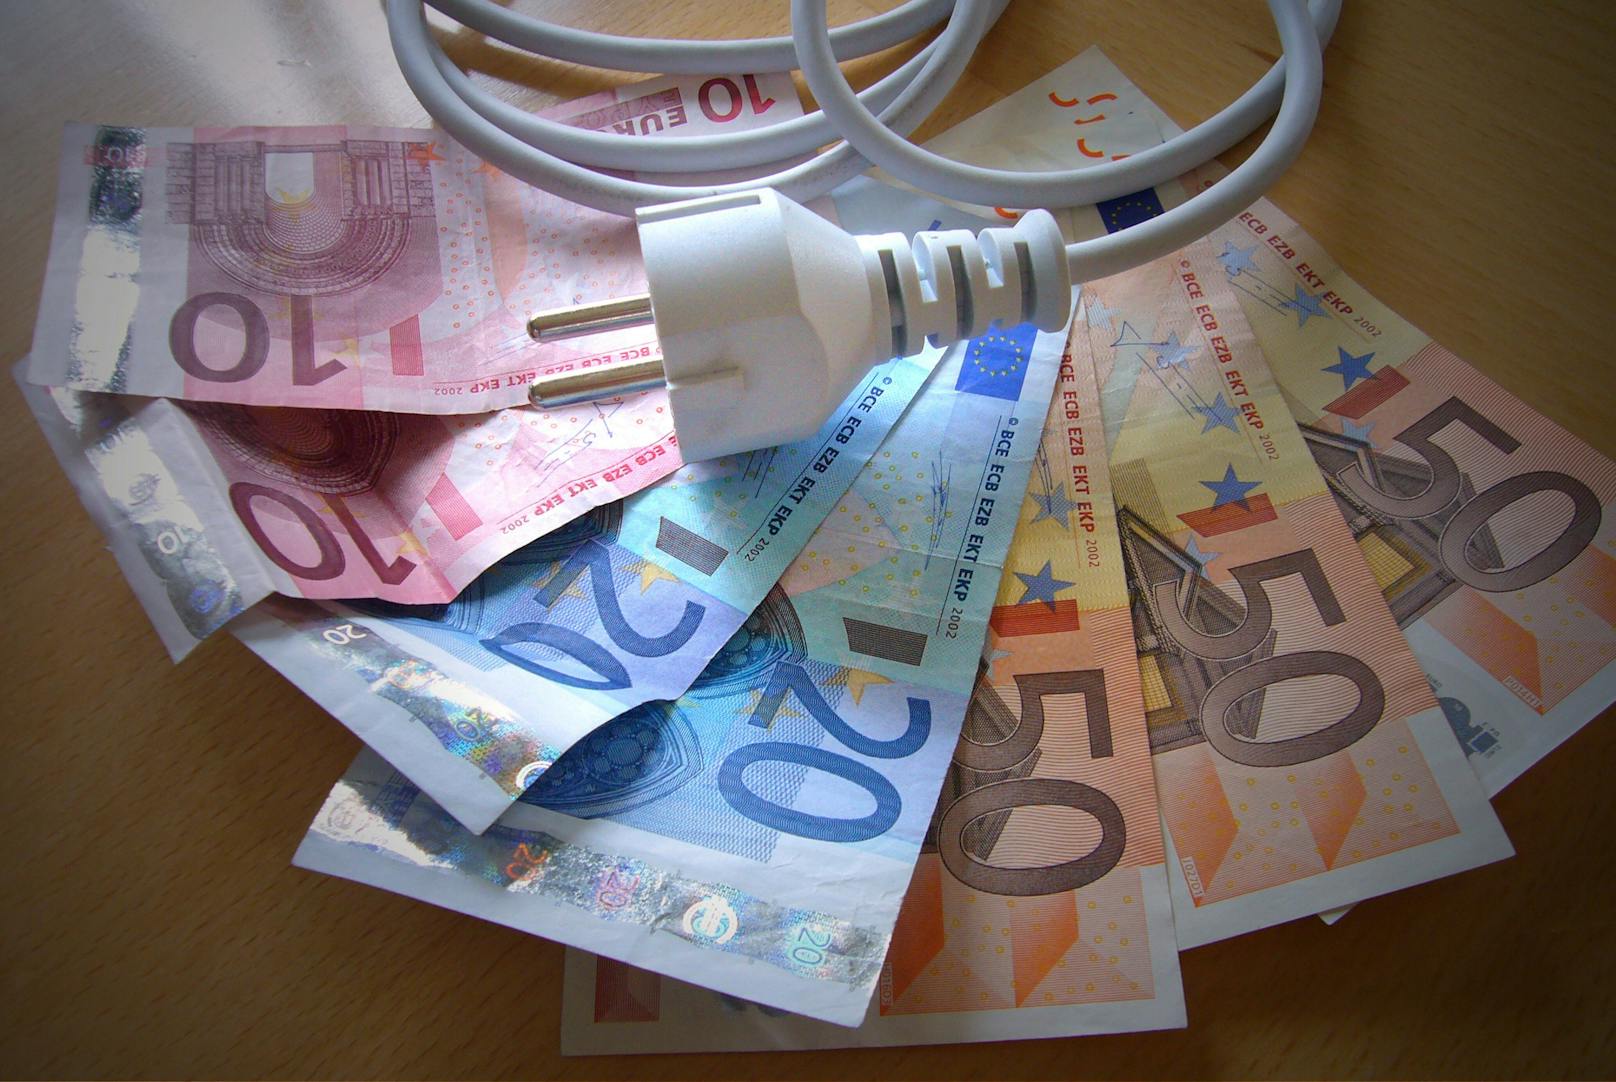 Strom wird in Österreich immer teurer - die Tarife teils absurd